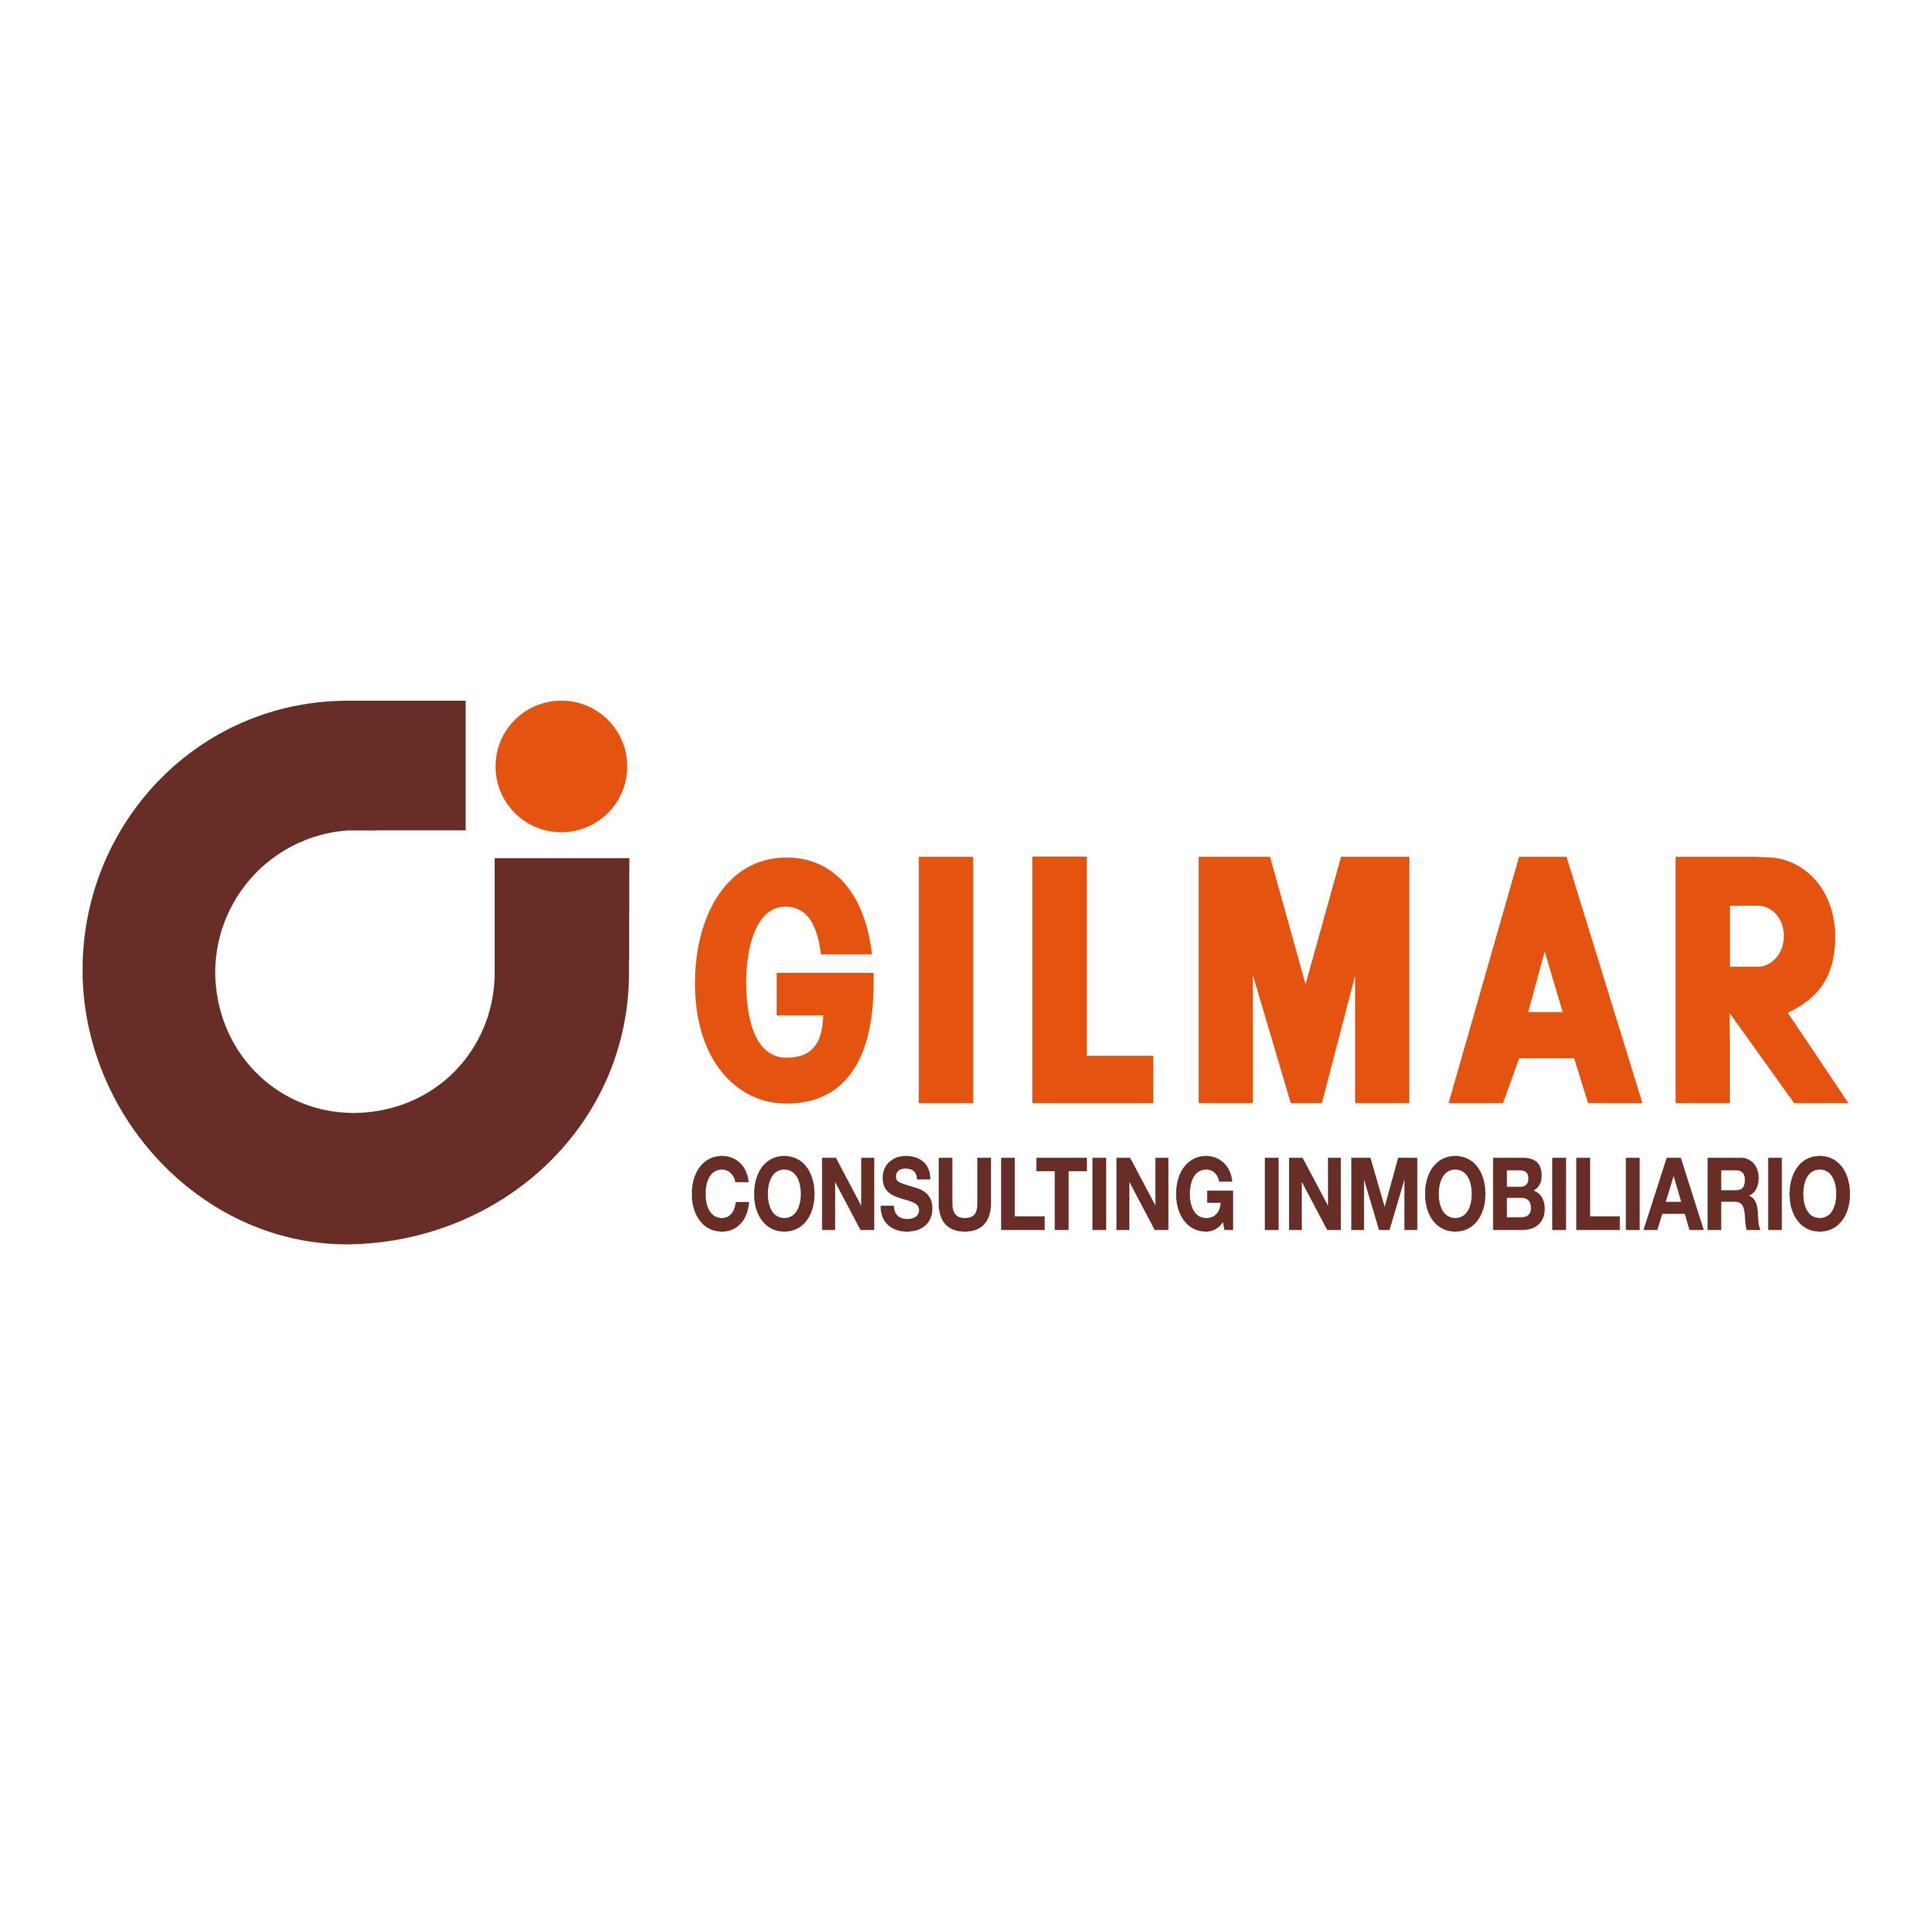 Gilmar Collado Villalba